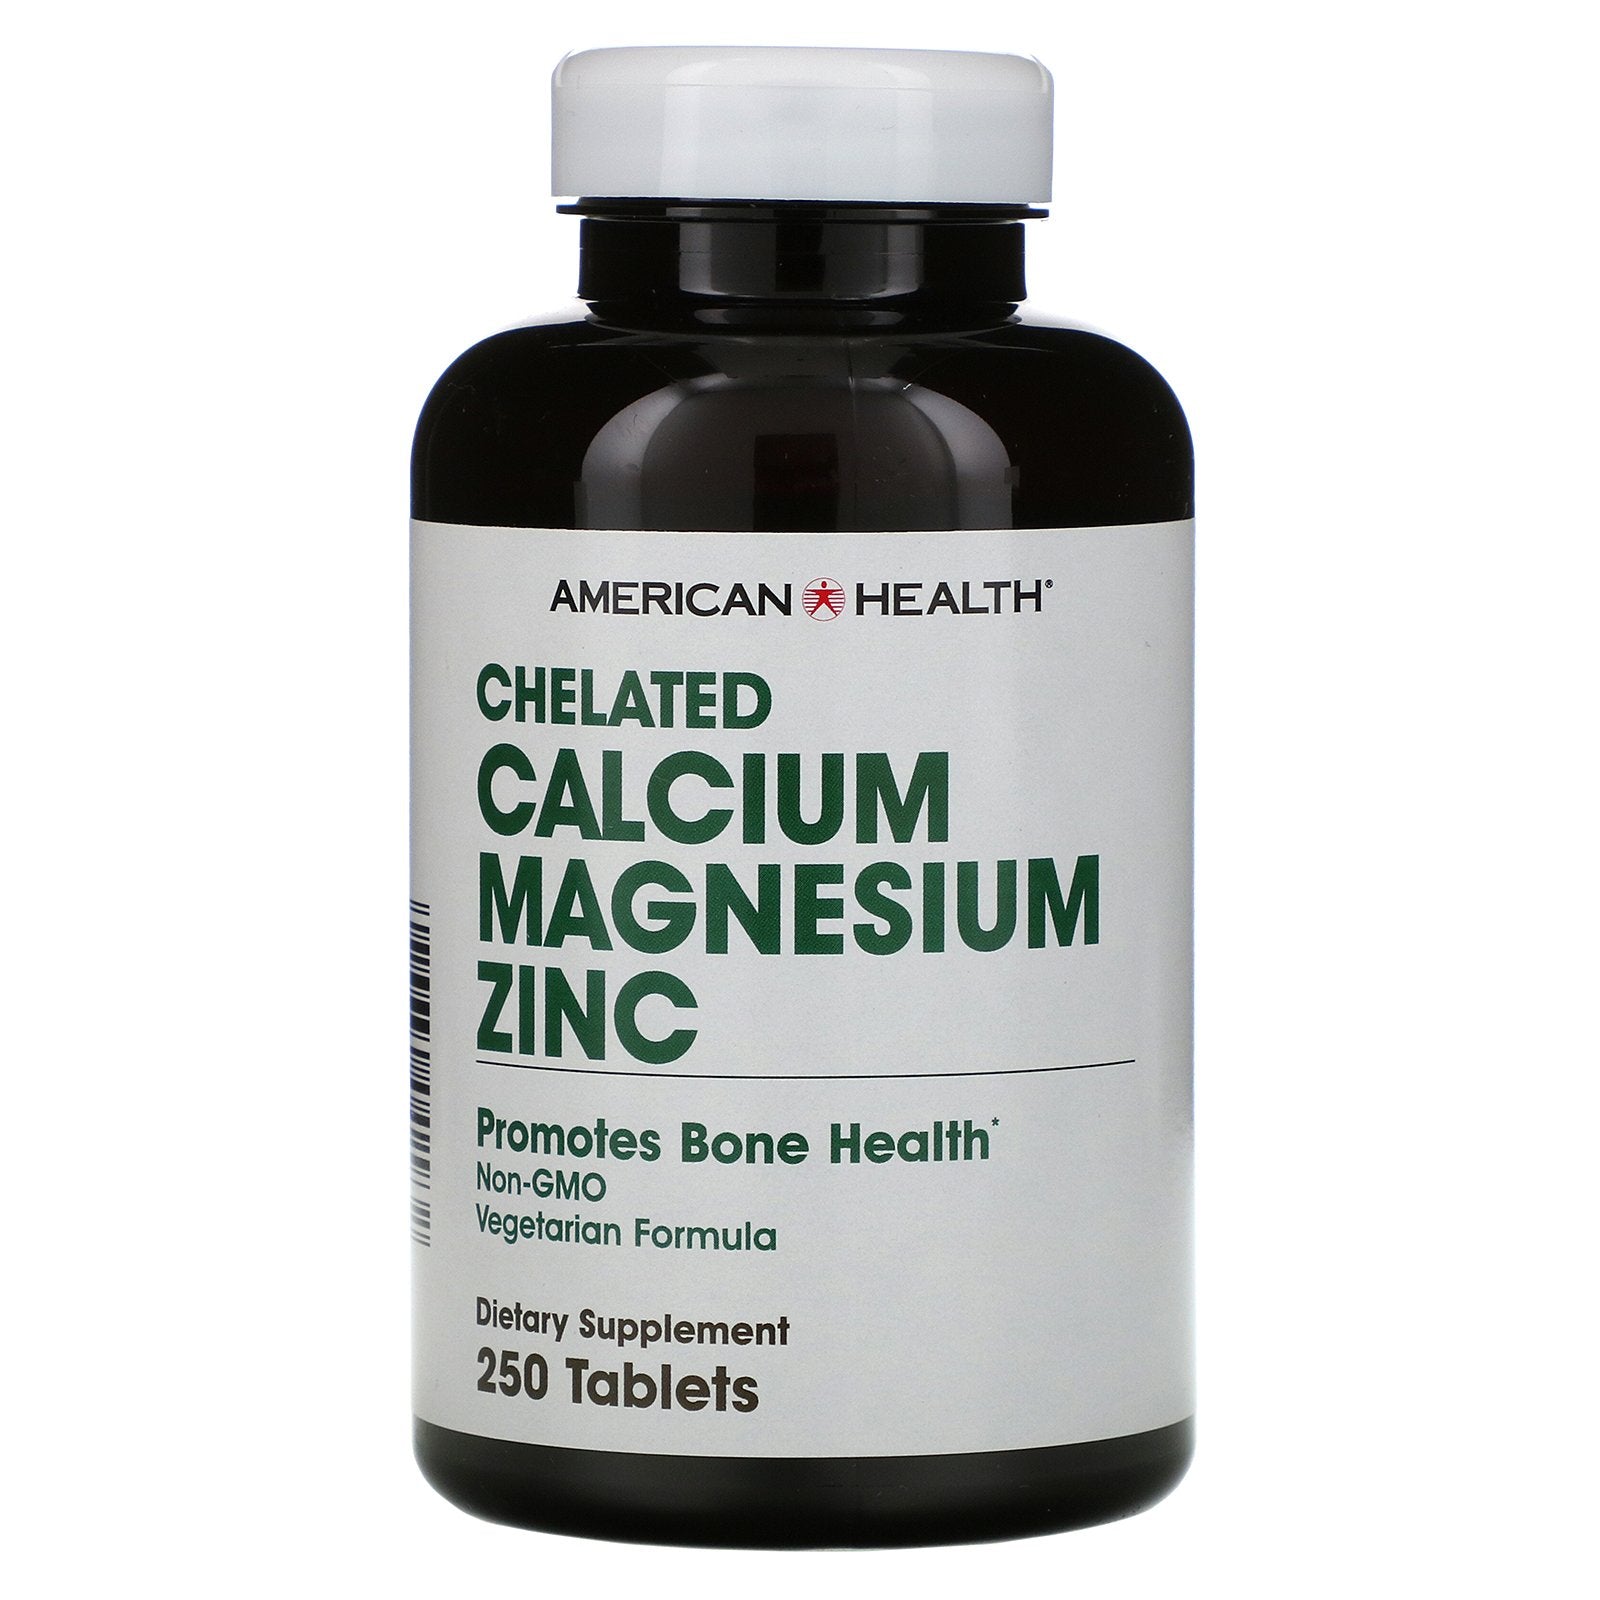 American Health, Chelated Calcium Magnesium Zinc